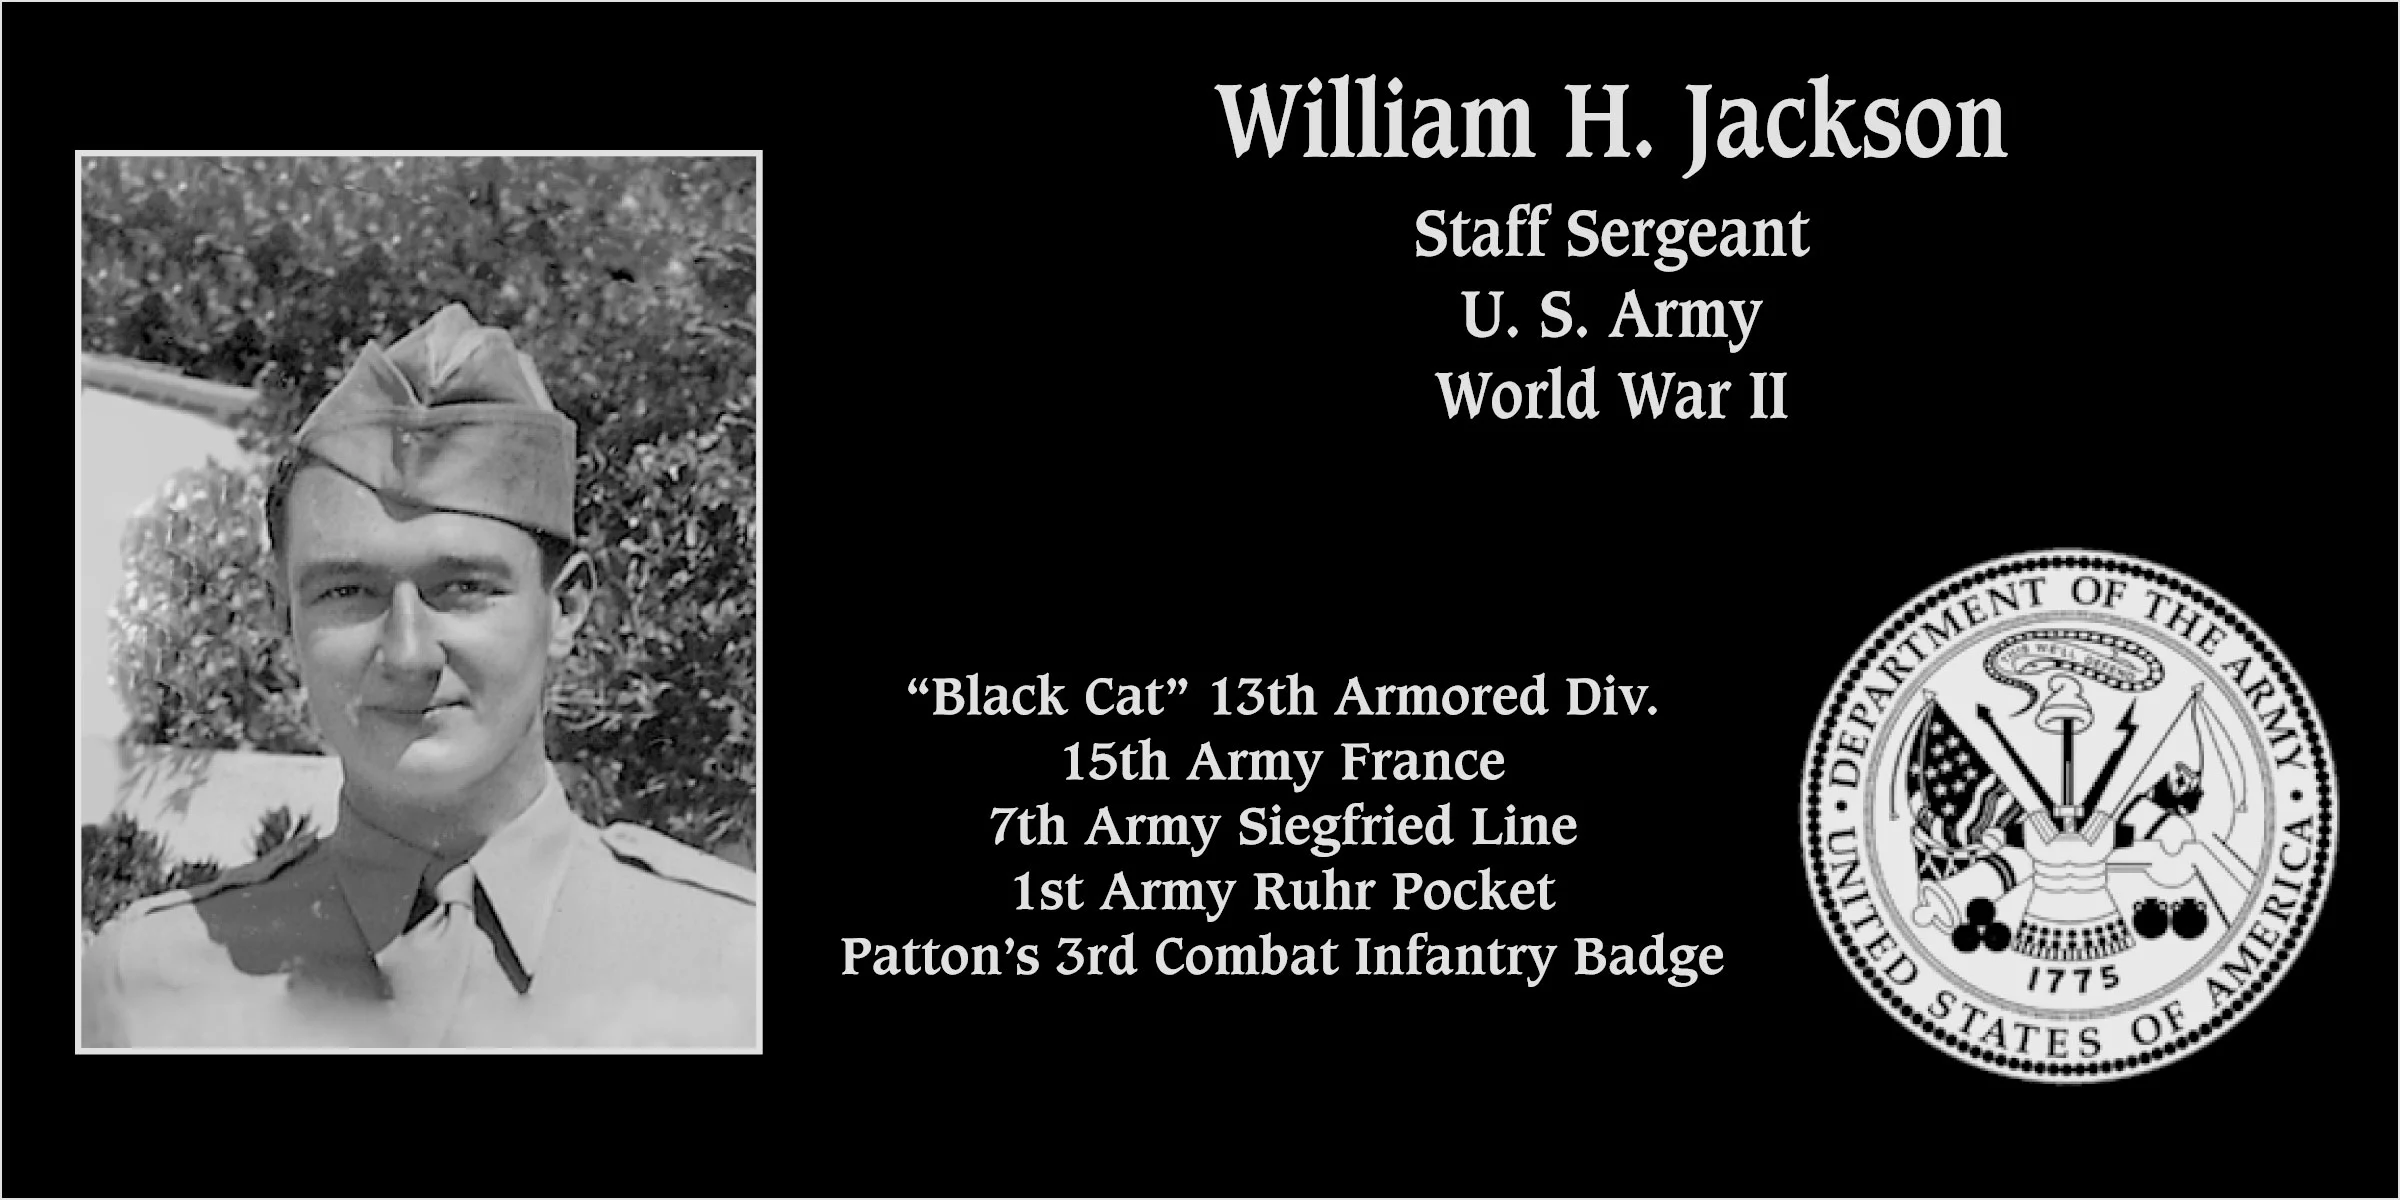 William H. Jackson